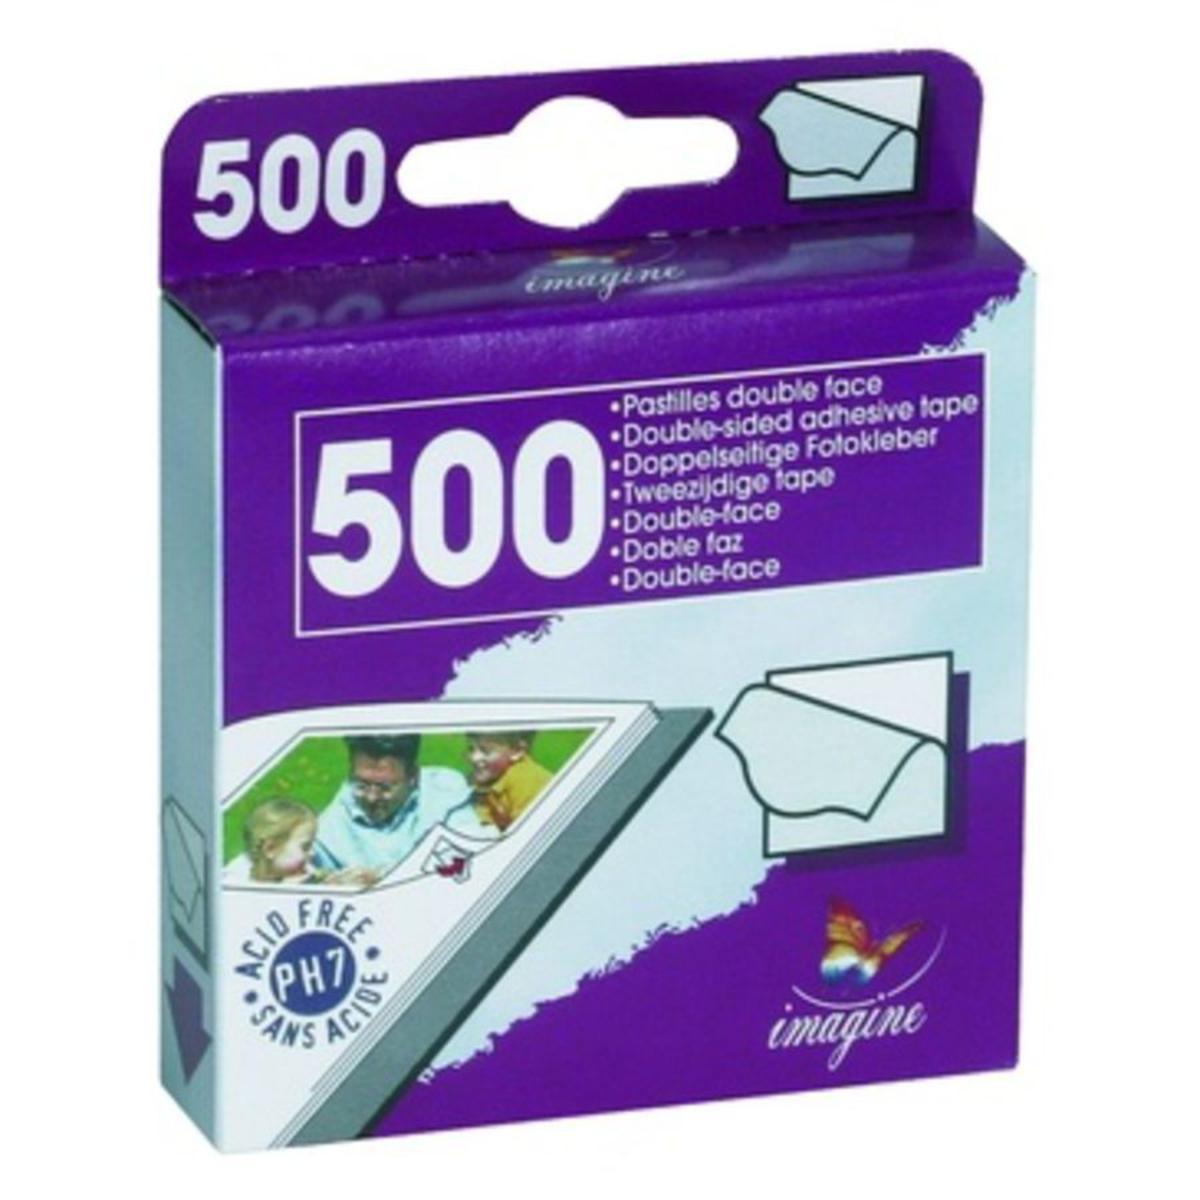 lot de 500 pastilles double face en papier adhésif - 9,4 x 7,7 x 2cm - Violet